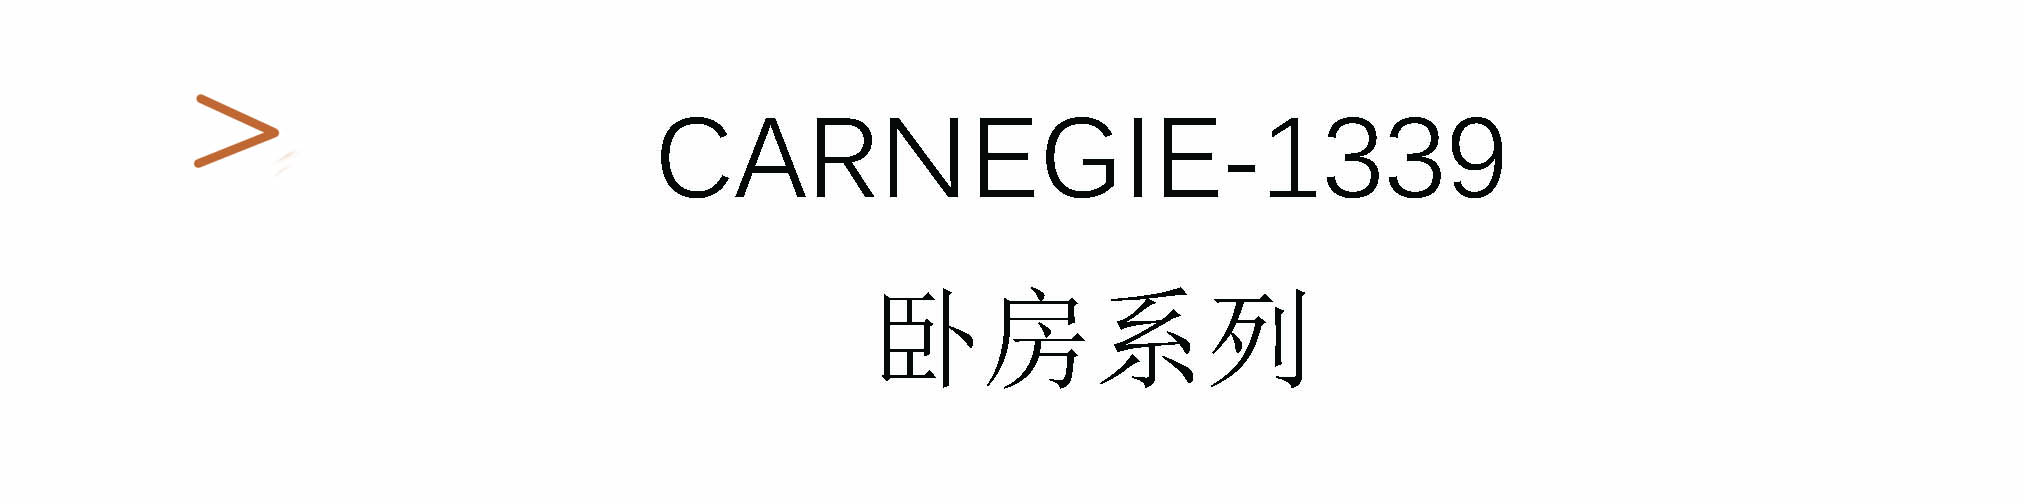 Carnegie-1339